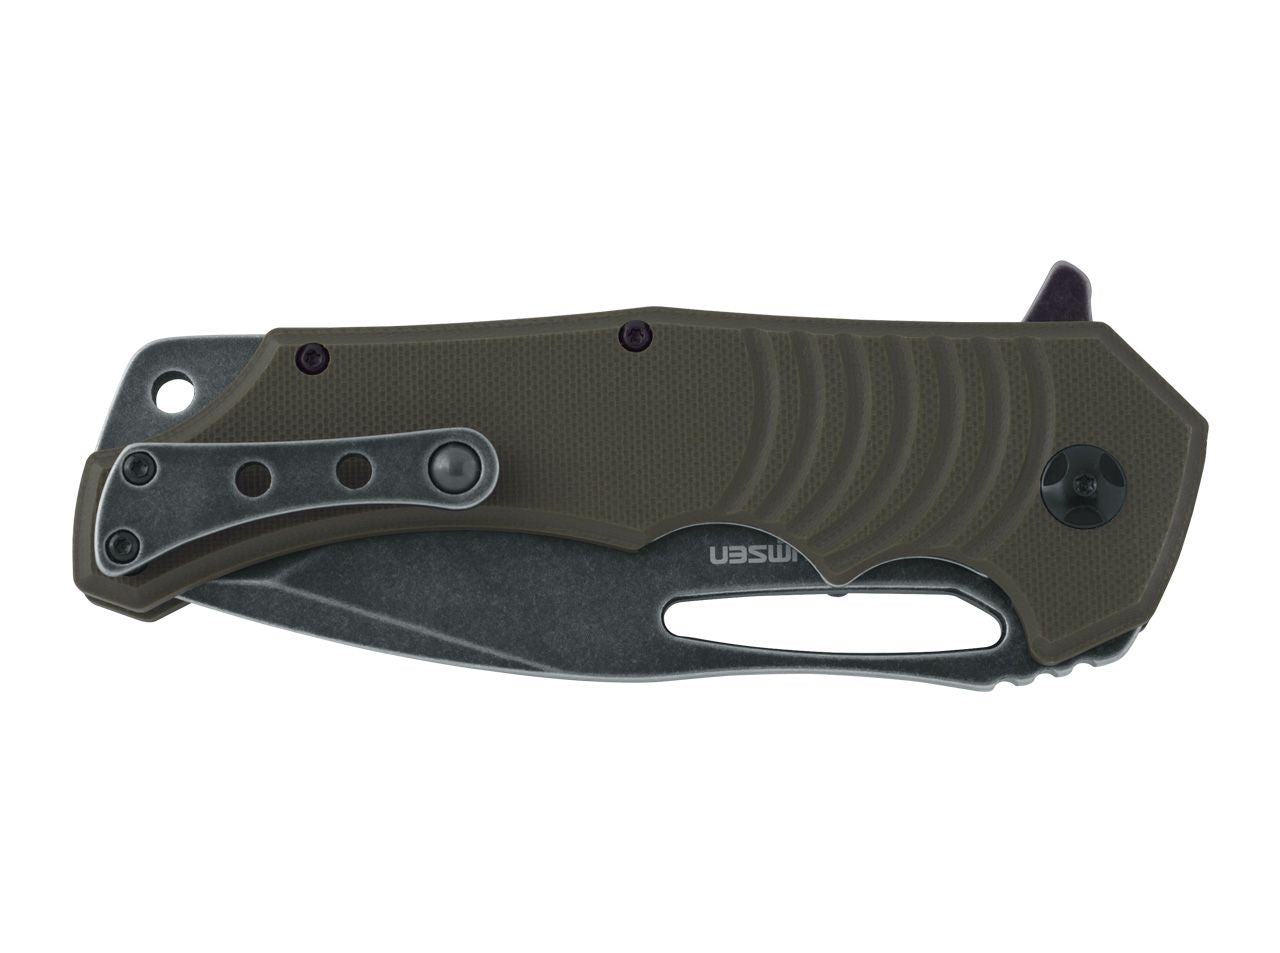 Fox BlackFox Hugin 3.94" 440C Stonewash PVD Green G10 Folding Knife by Mikkel Willumsen